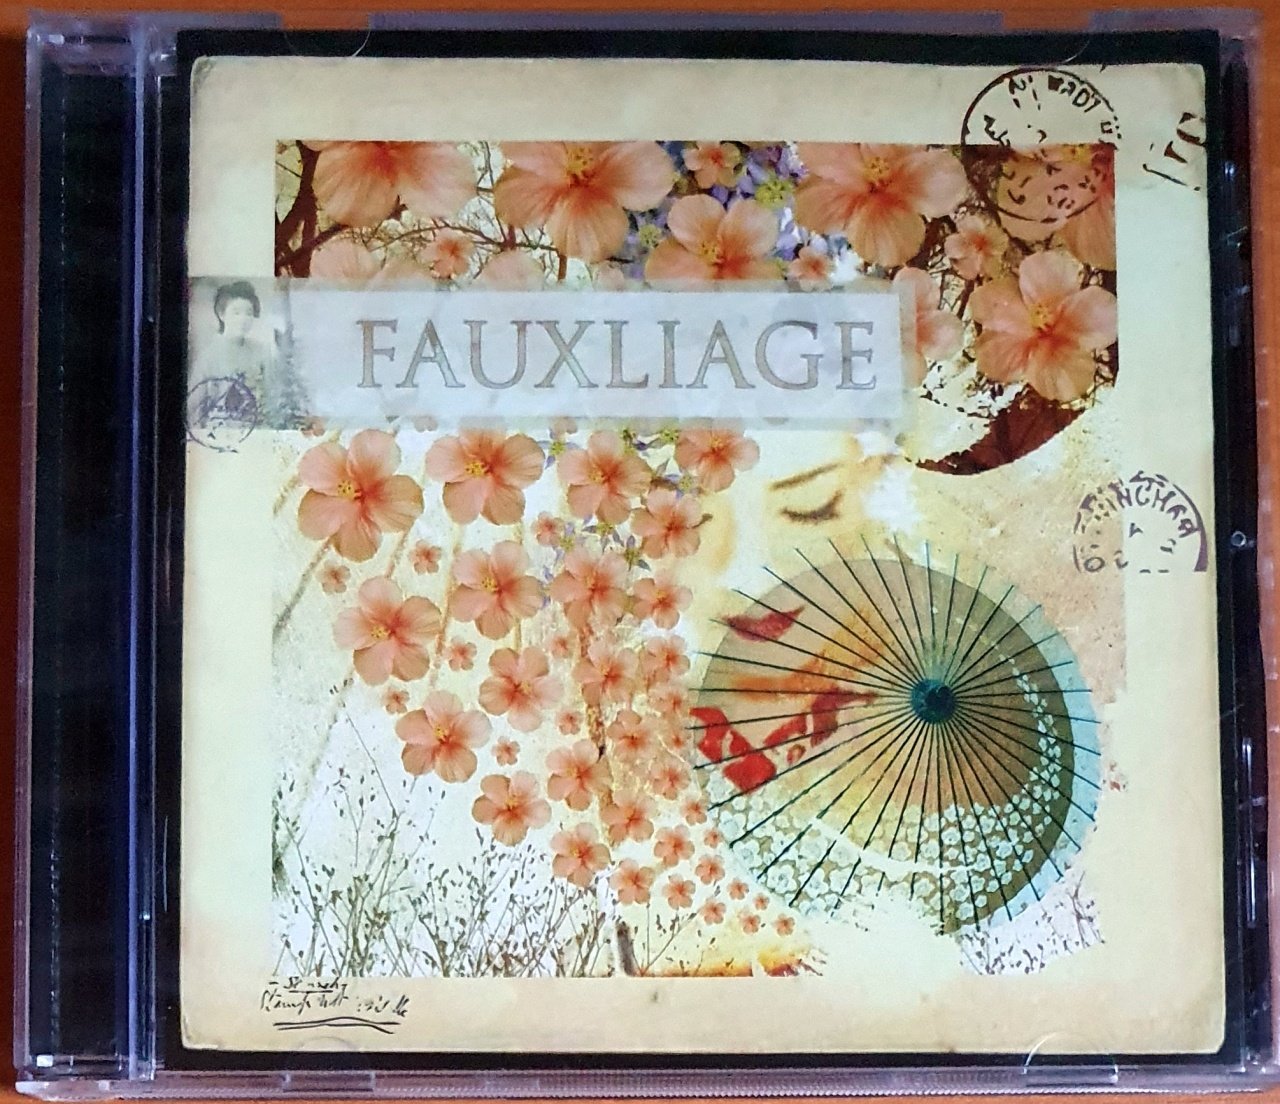 FAUXLIAGE - FAUXLIAGE (2007) - CD NETTWERK 2.EL